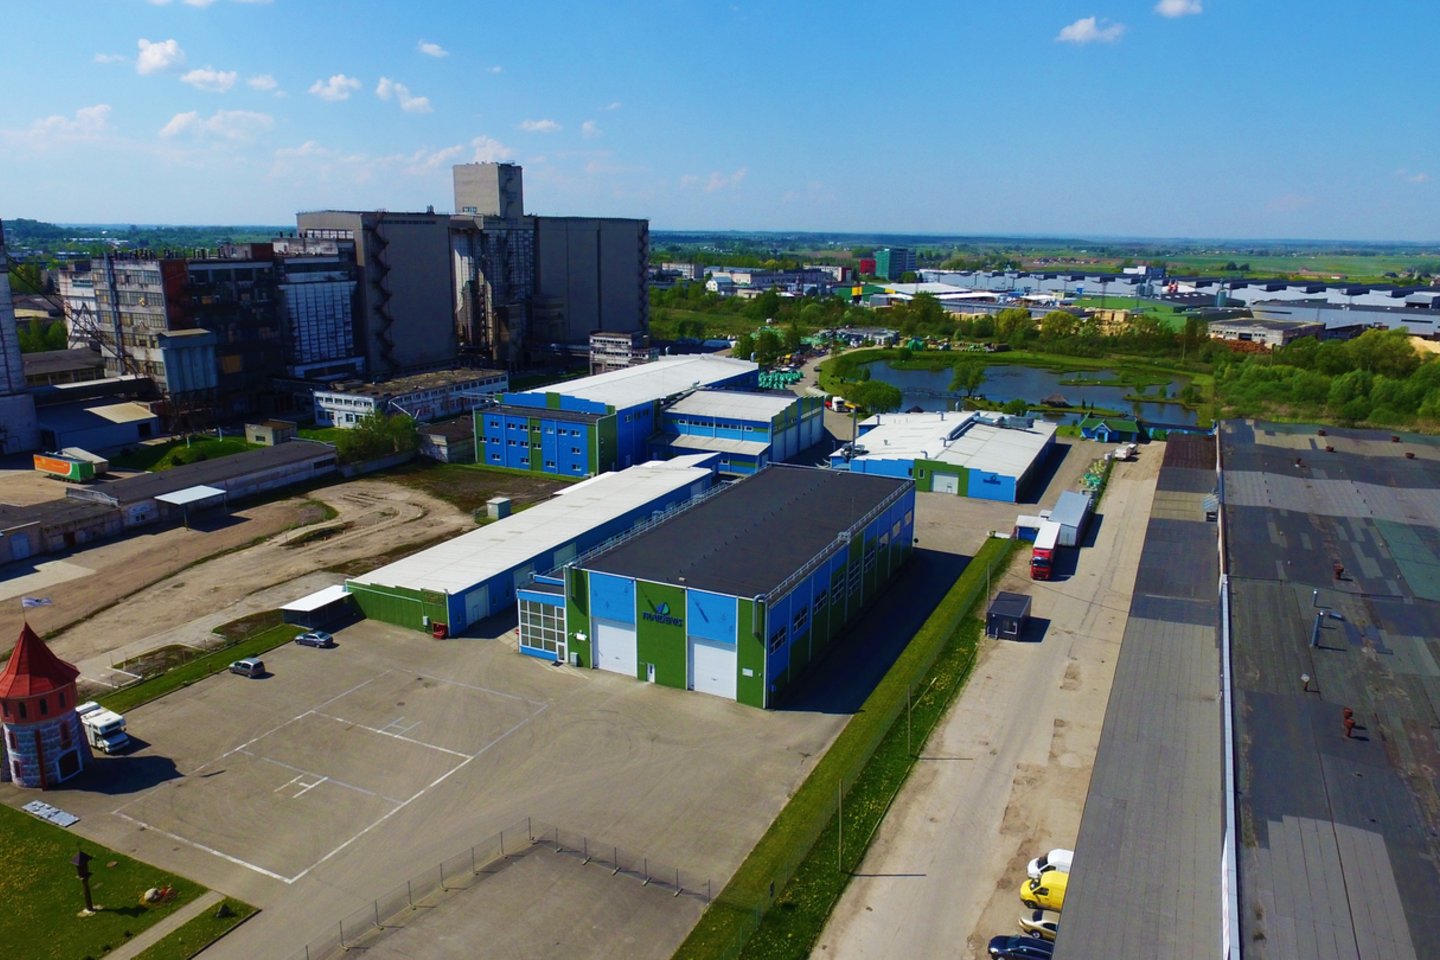 Gamybinė įmonė „Traidenis“ įkurta 1996 m., kuri pirmoji Lietuvoje pradėjo gaminti nuotekų valymo įrenginius ir talpas iš stiklaplasčio.<br>Archyvo nuotr.